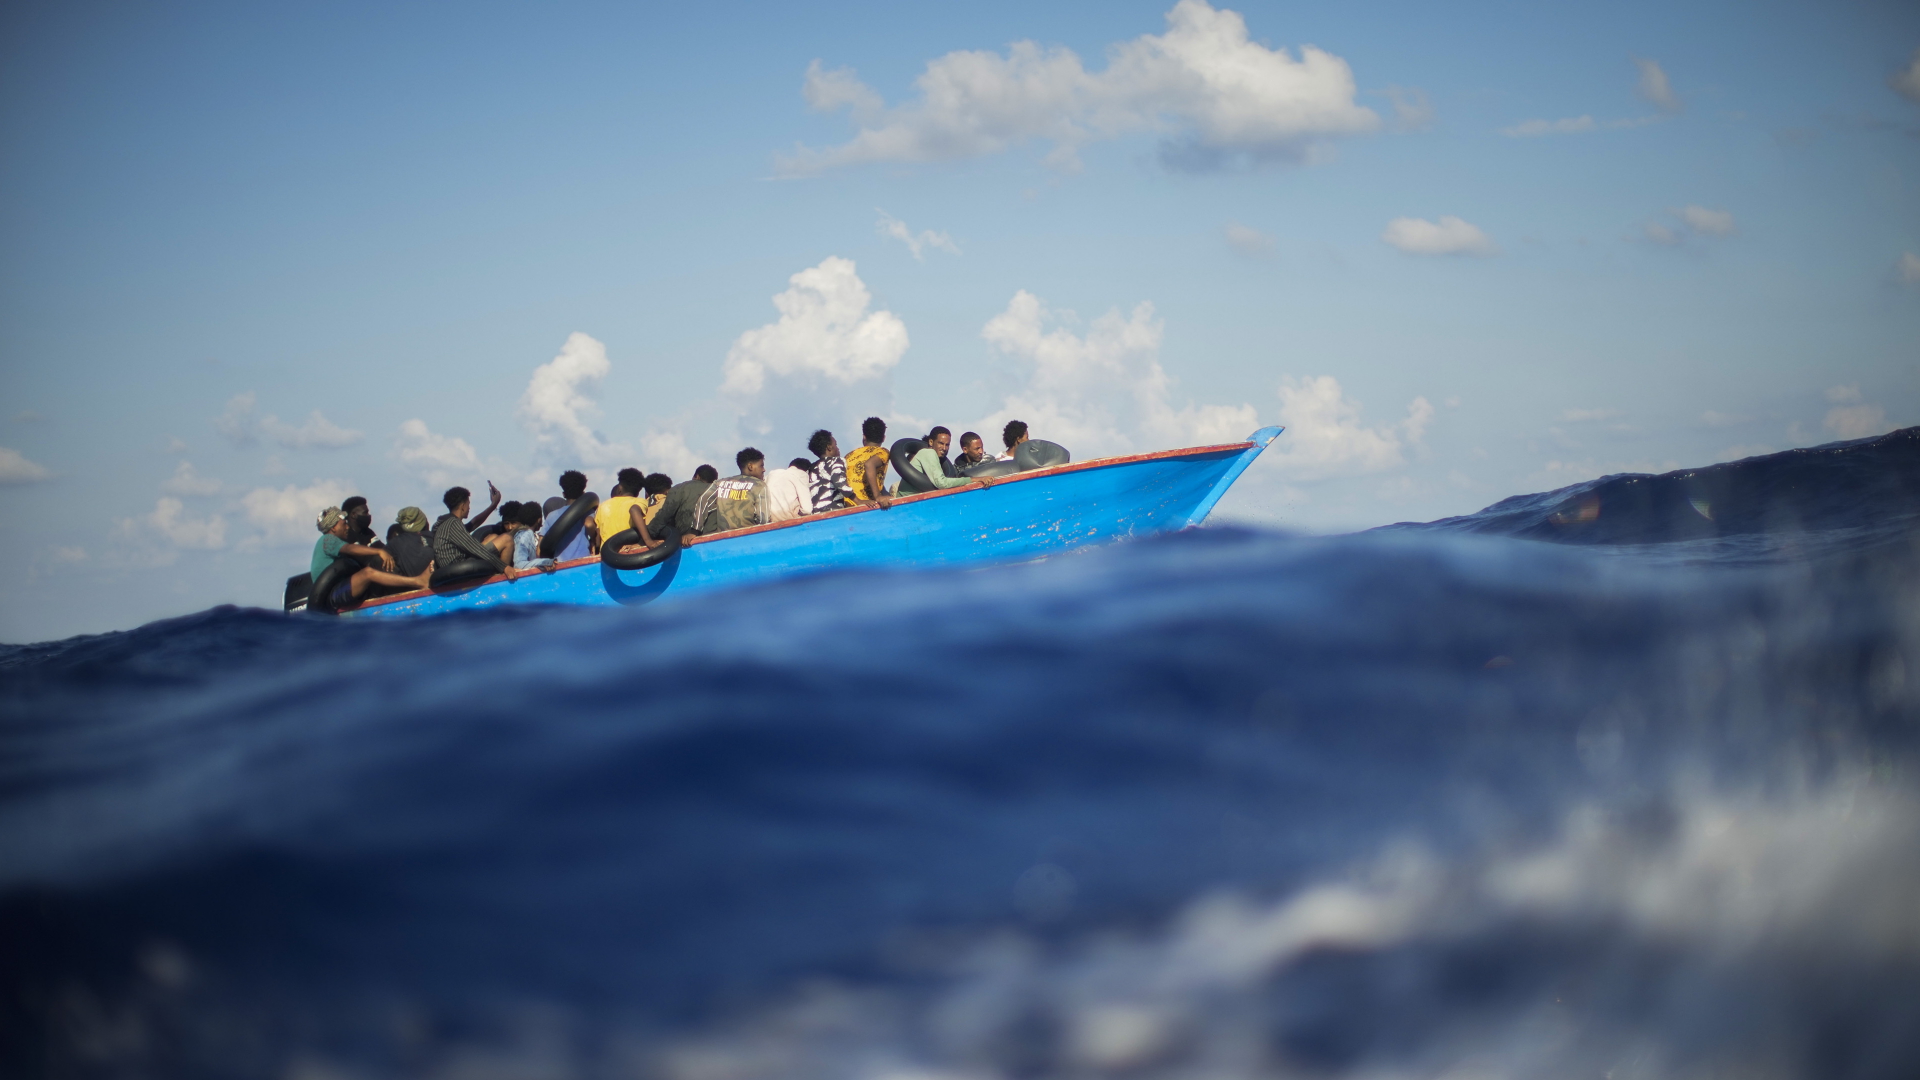 Capodanno al largo della Tunisia: affondano diverse barche cariche di migranti